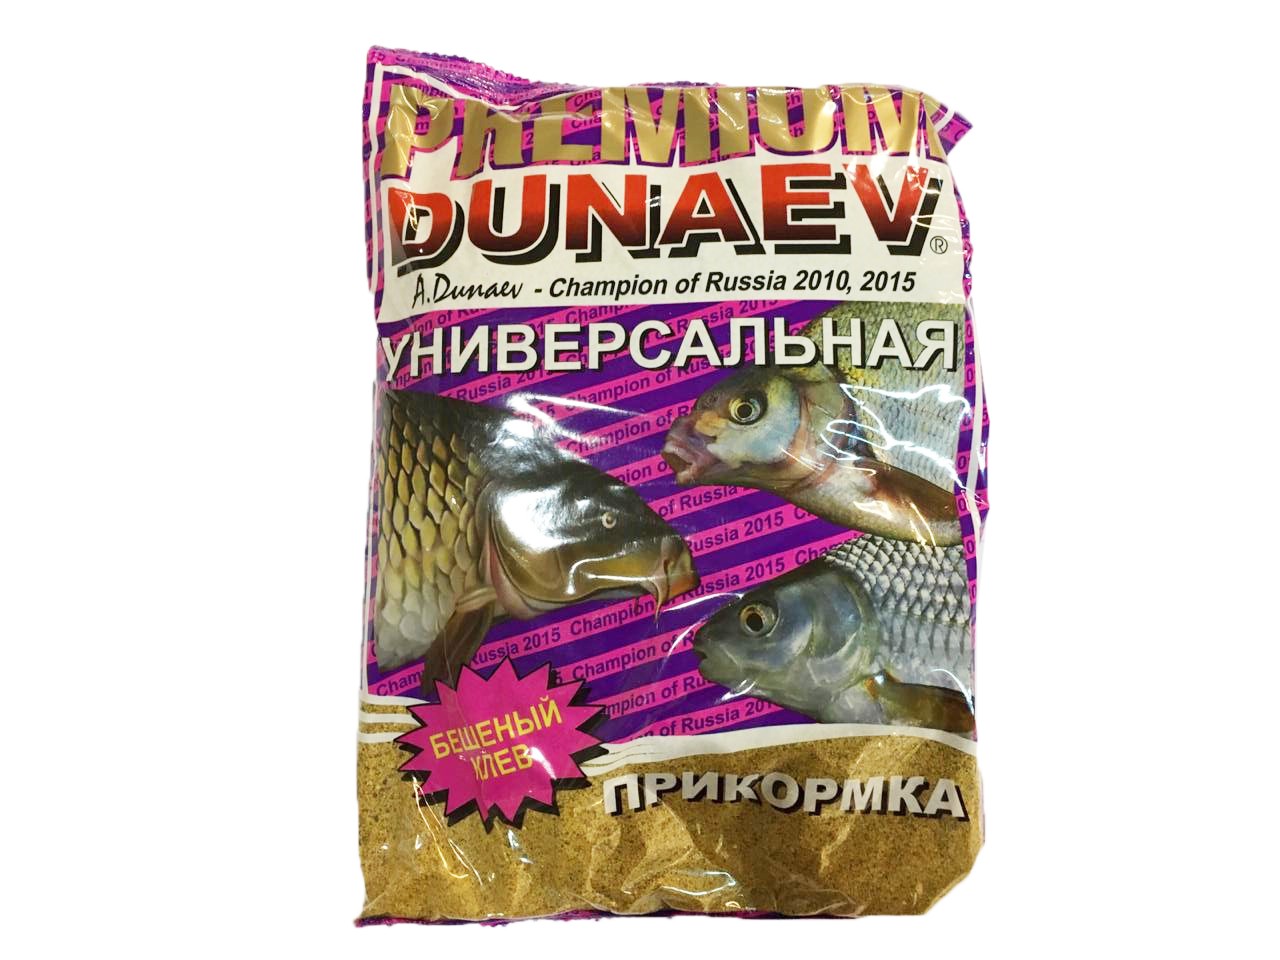 Прикормка Dunaev классика 0,9кг фидер универсальная - фото 1